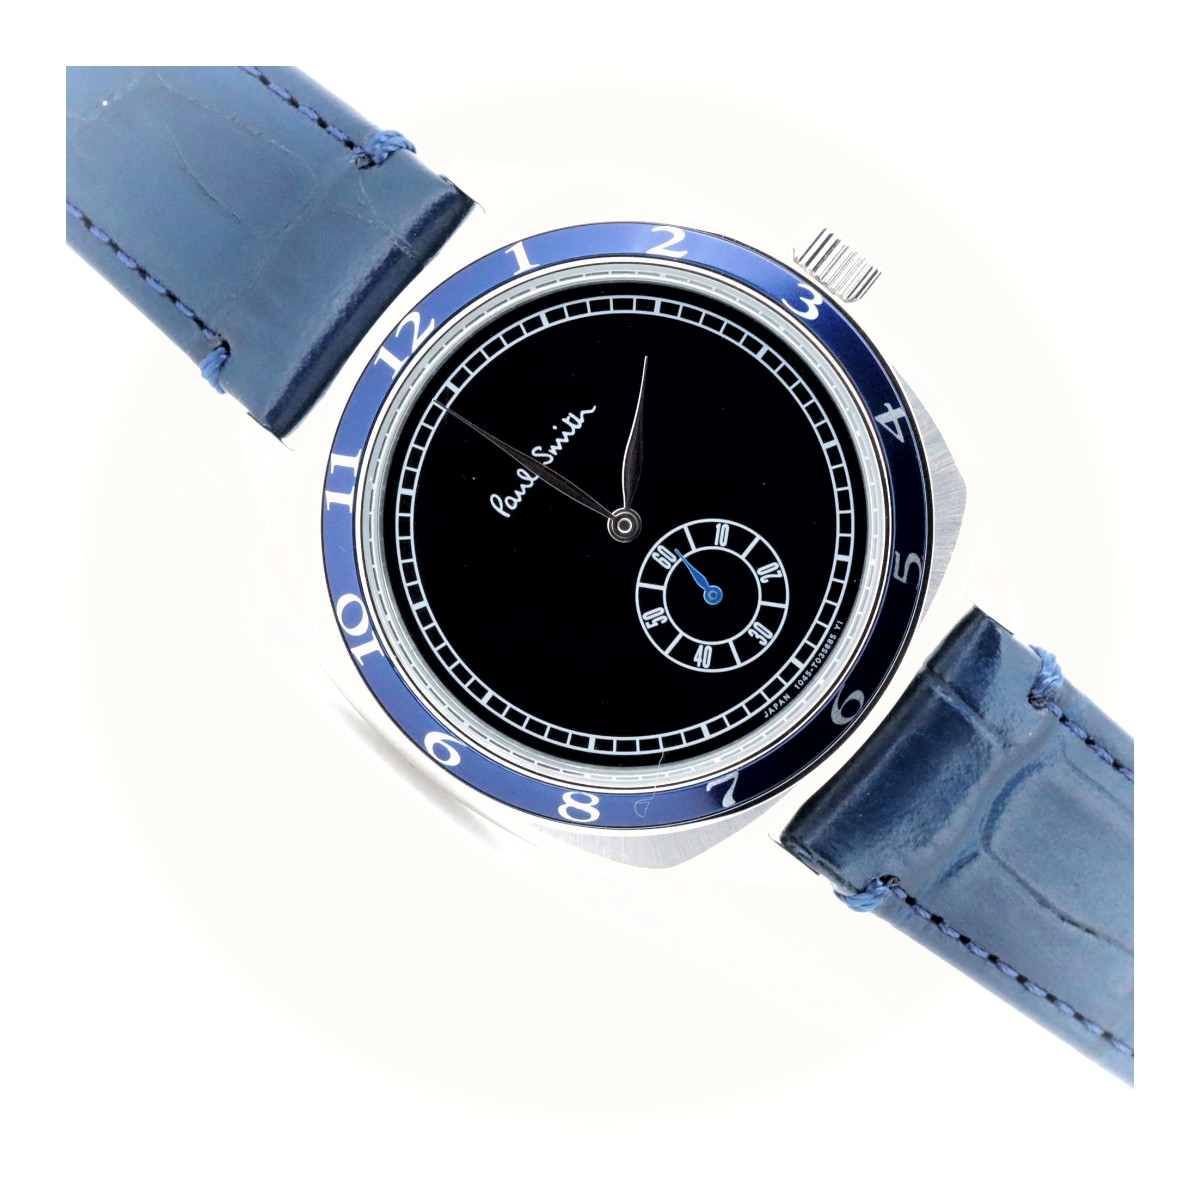 ポールスミス 1995年復刻モデル スモールセコンド クォーツ 1045-T023487 黒 メンズ腕時計 質屋出品